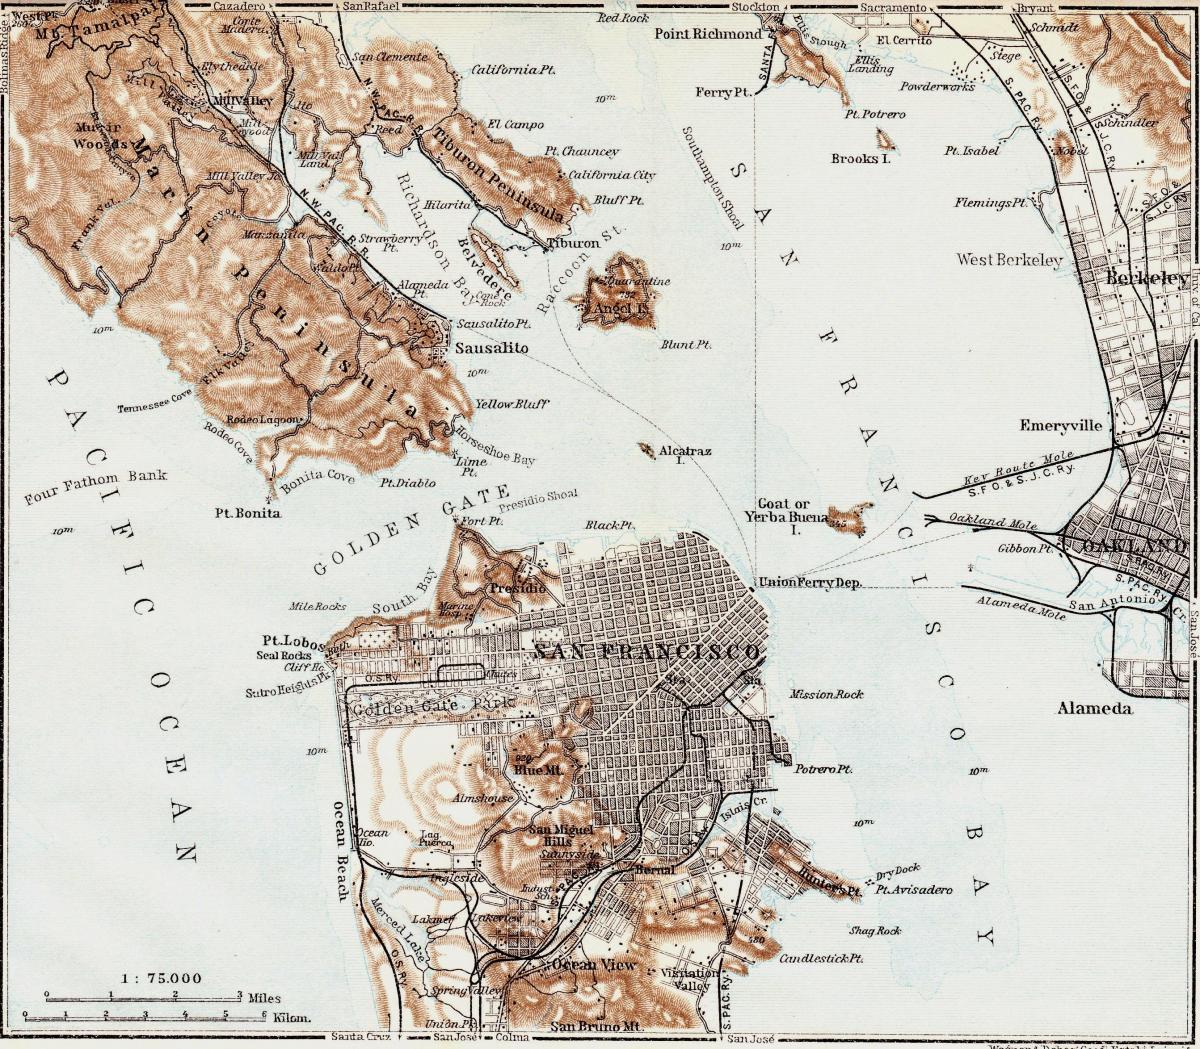 Քարտեզը հին է Սան Ֆրանցիսկո 